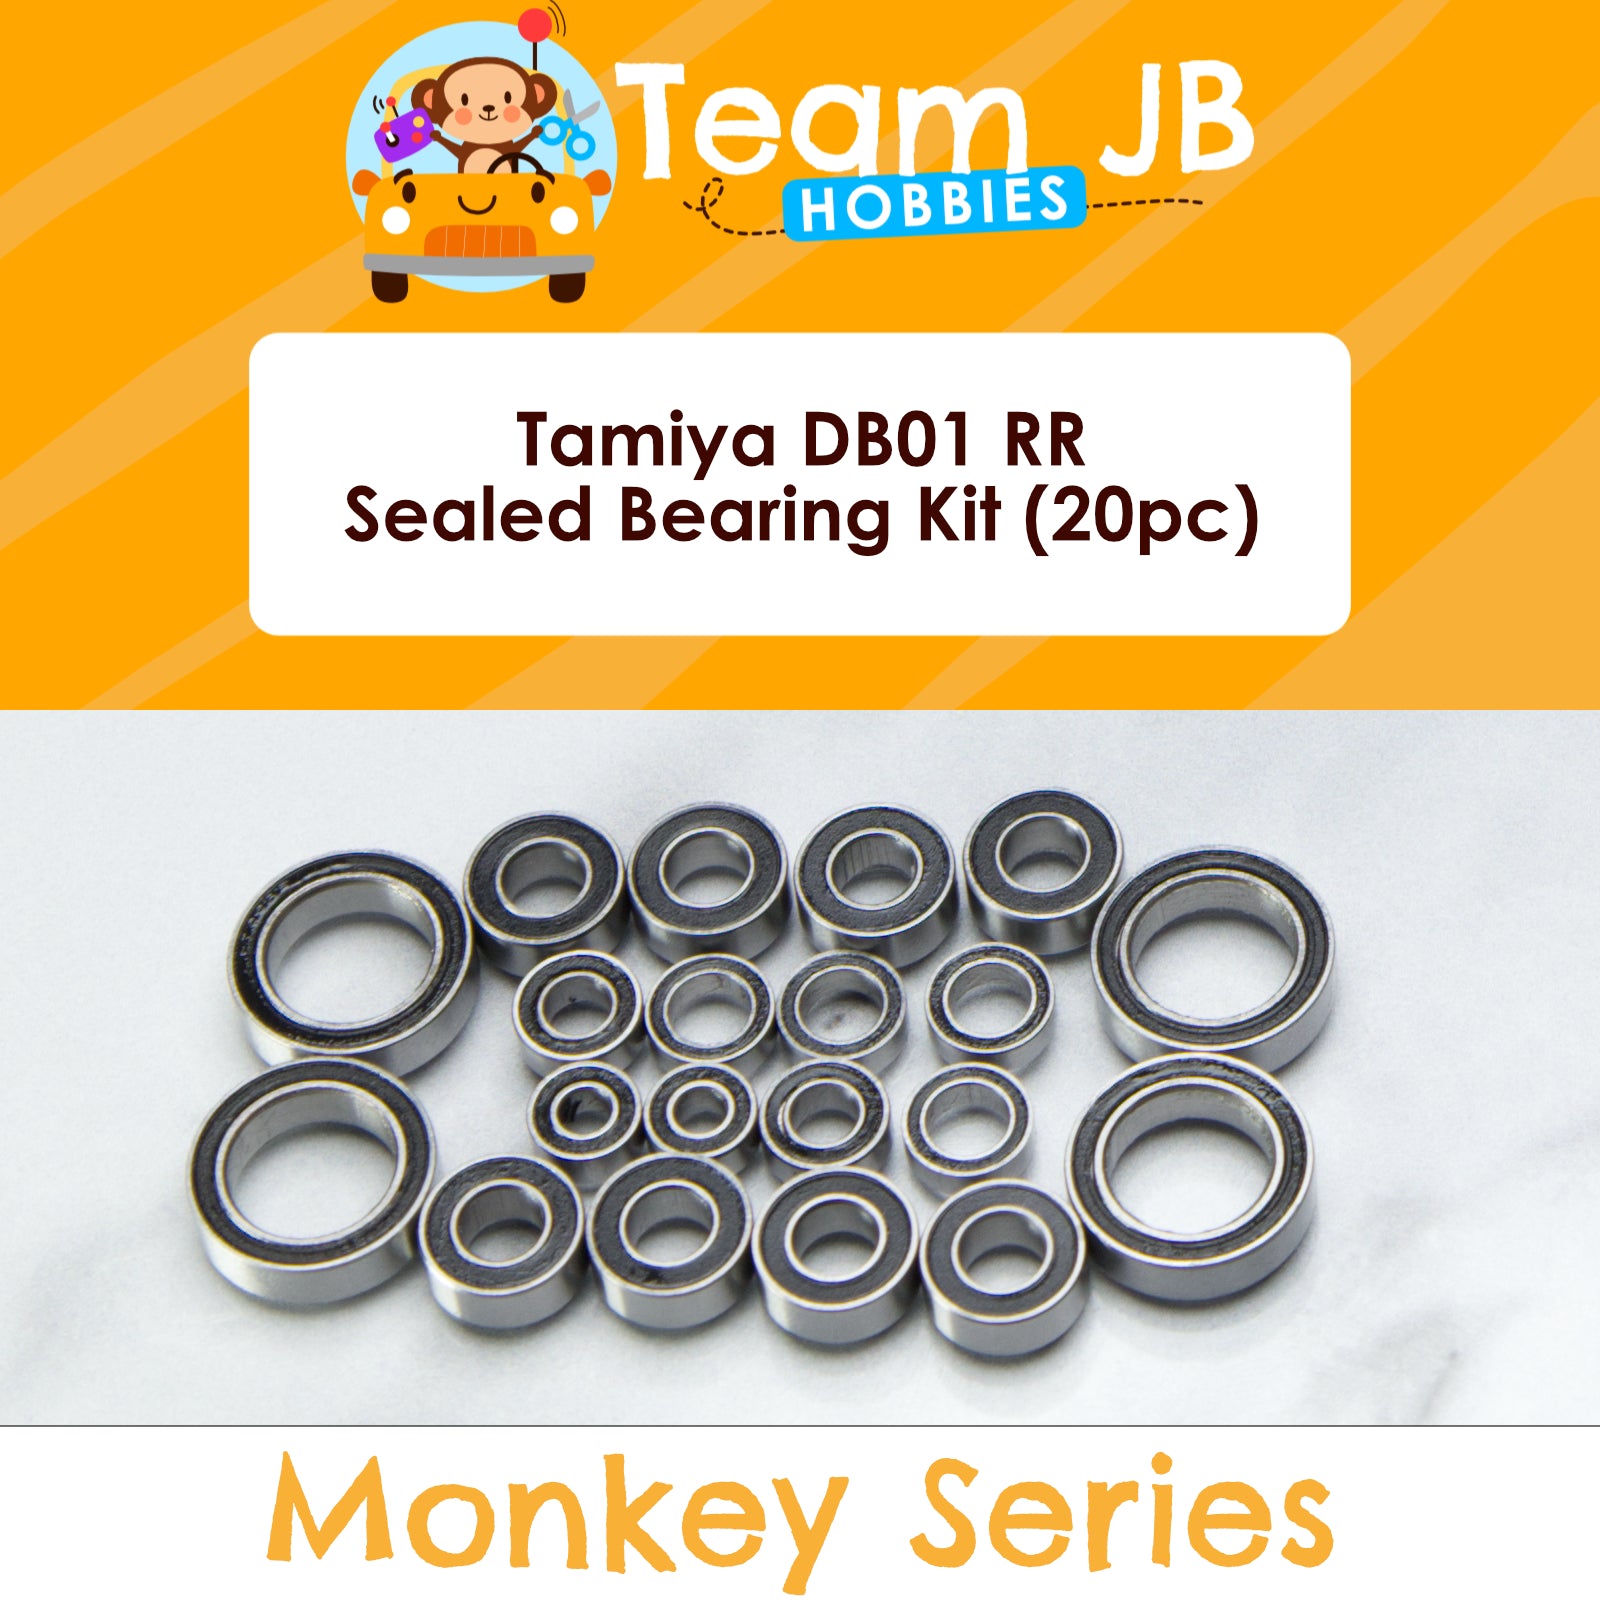 Tamiya DB01 RR - Sealed Bearing Kit